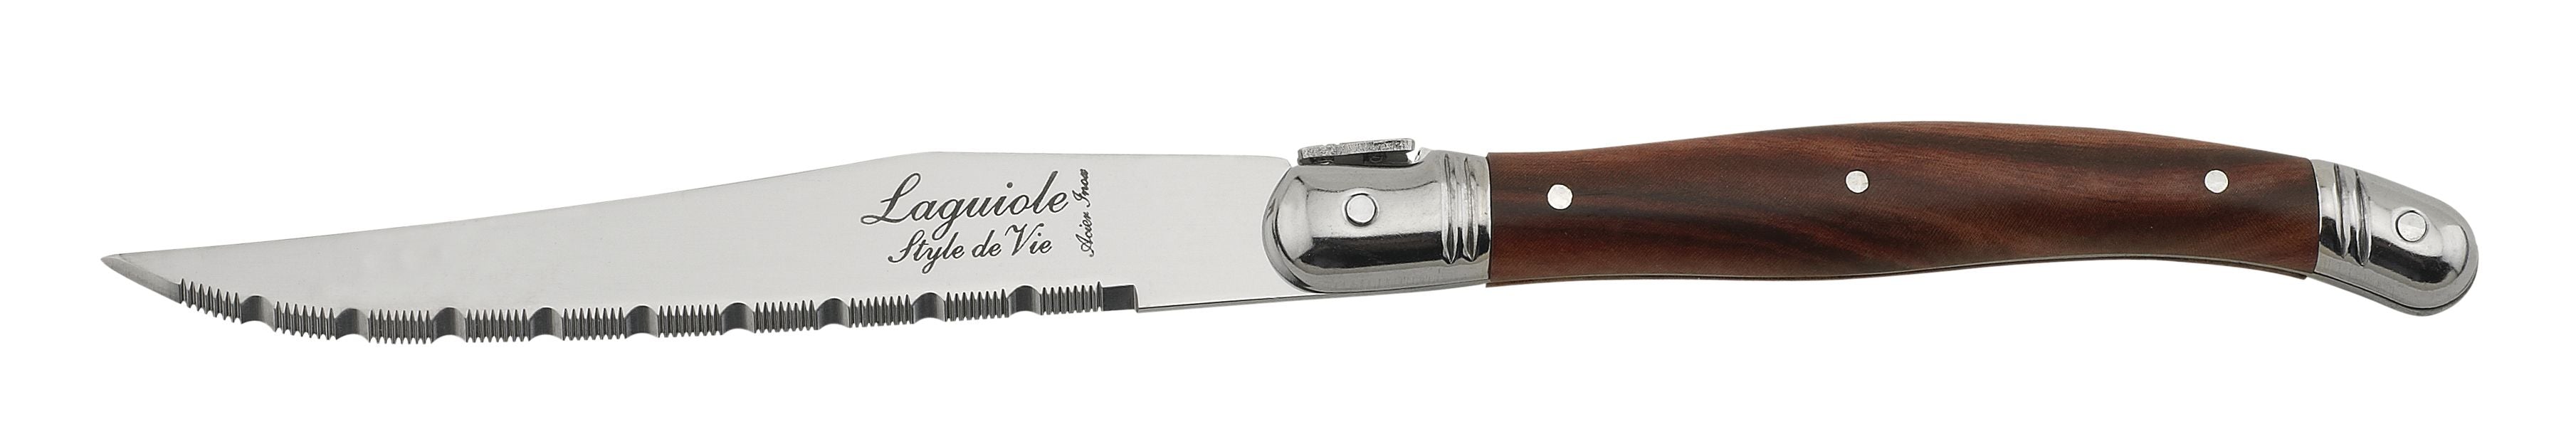 Estilo de Vie Authentique Laguiole Premium Line Steak Knives de 6 piezas, madera oscura